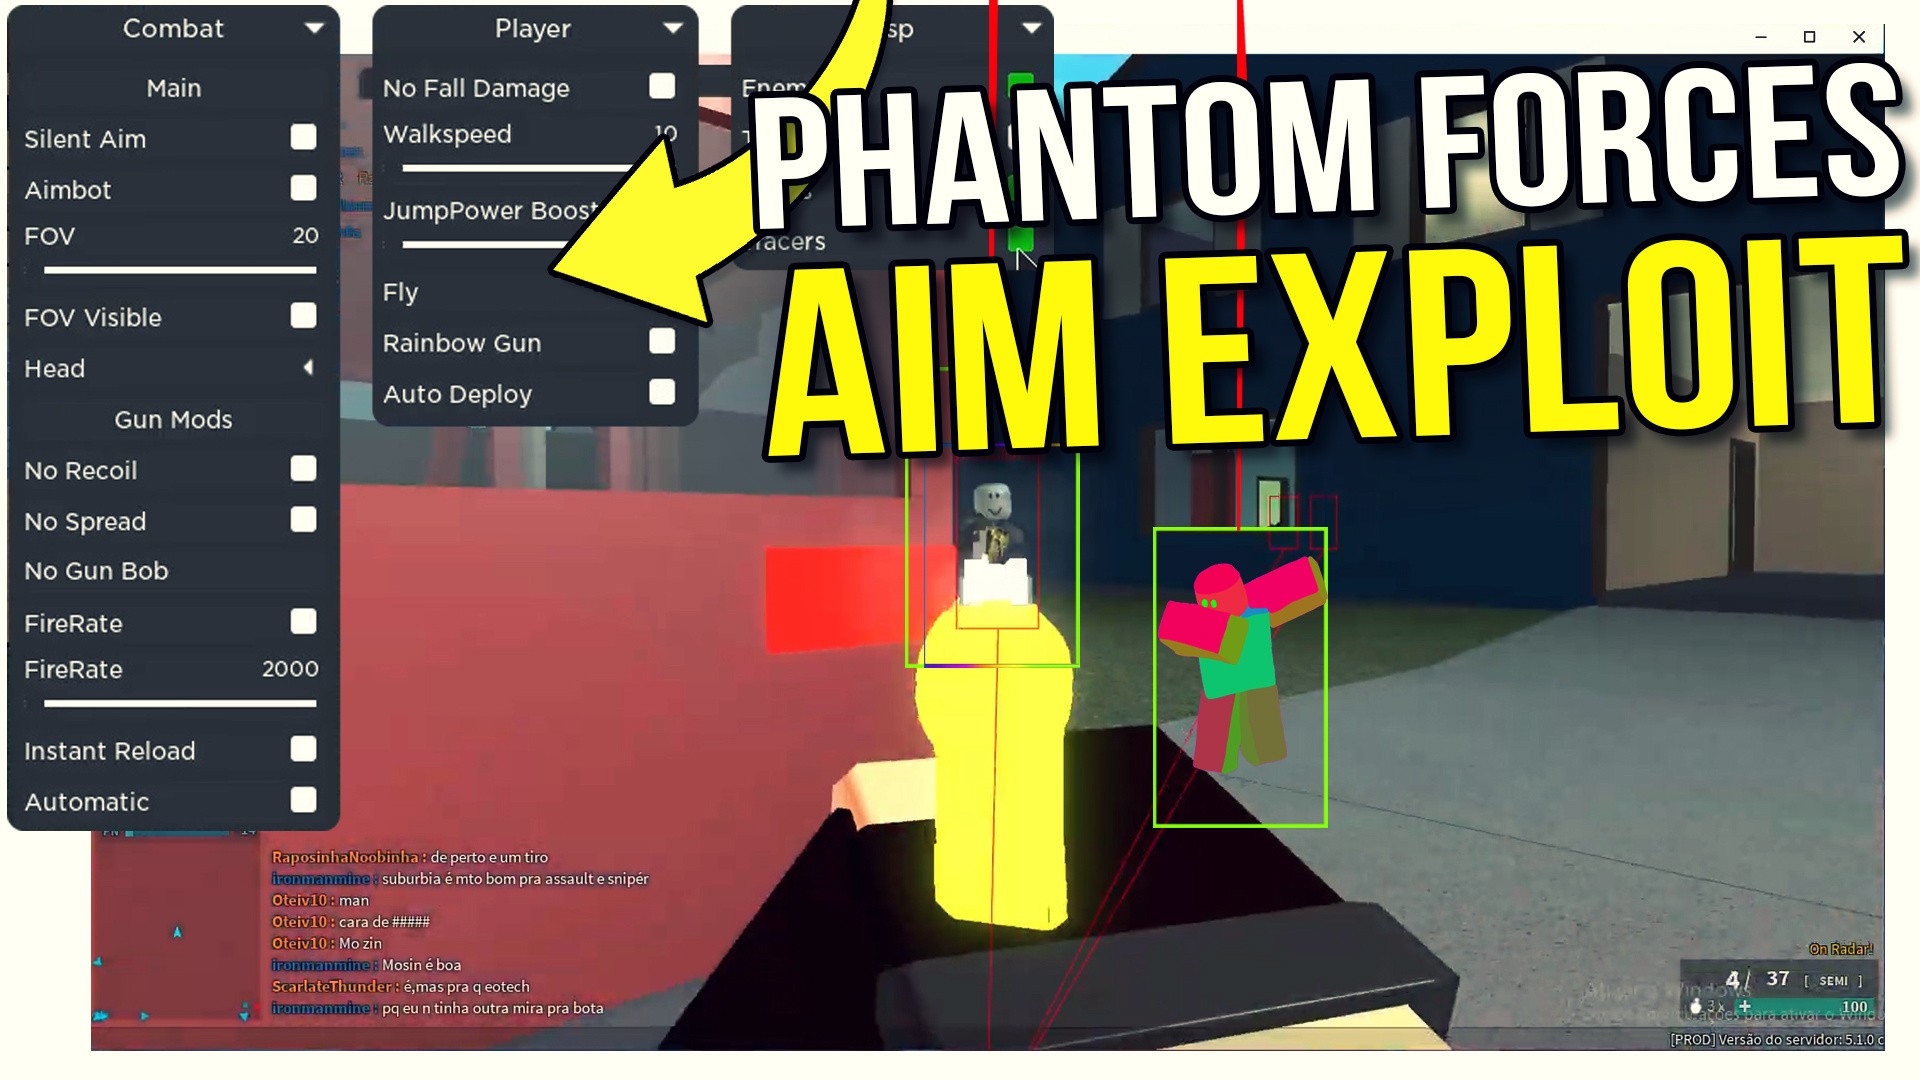 Phantom Forces Op Hack Gui Free Teletype - roblox phantom forces hacks